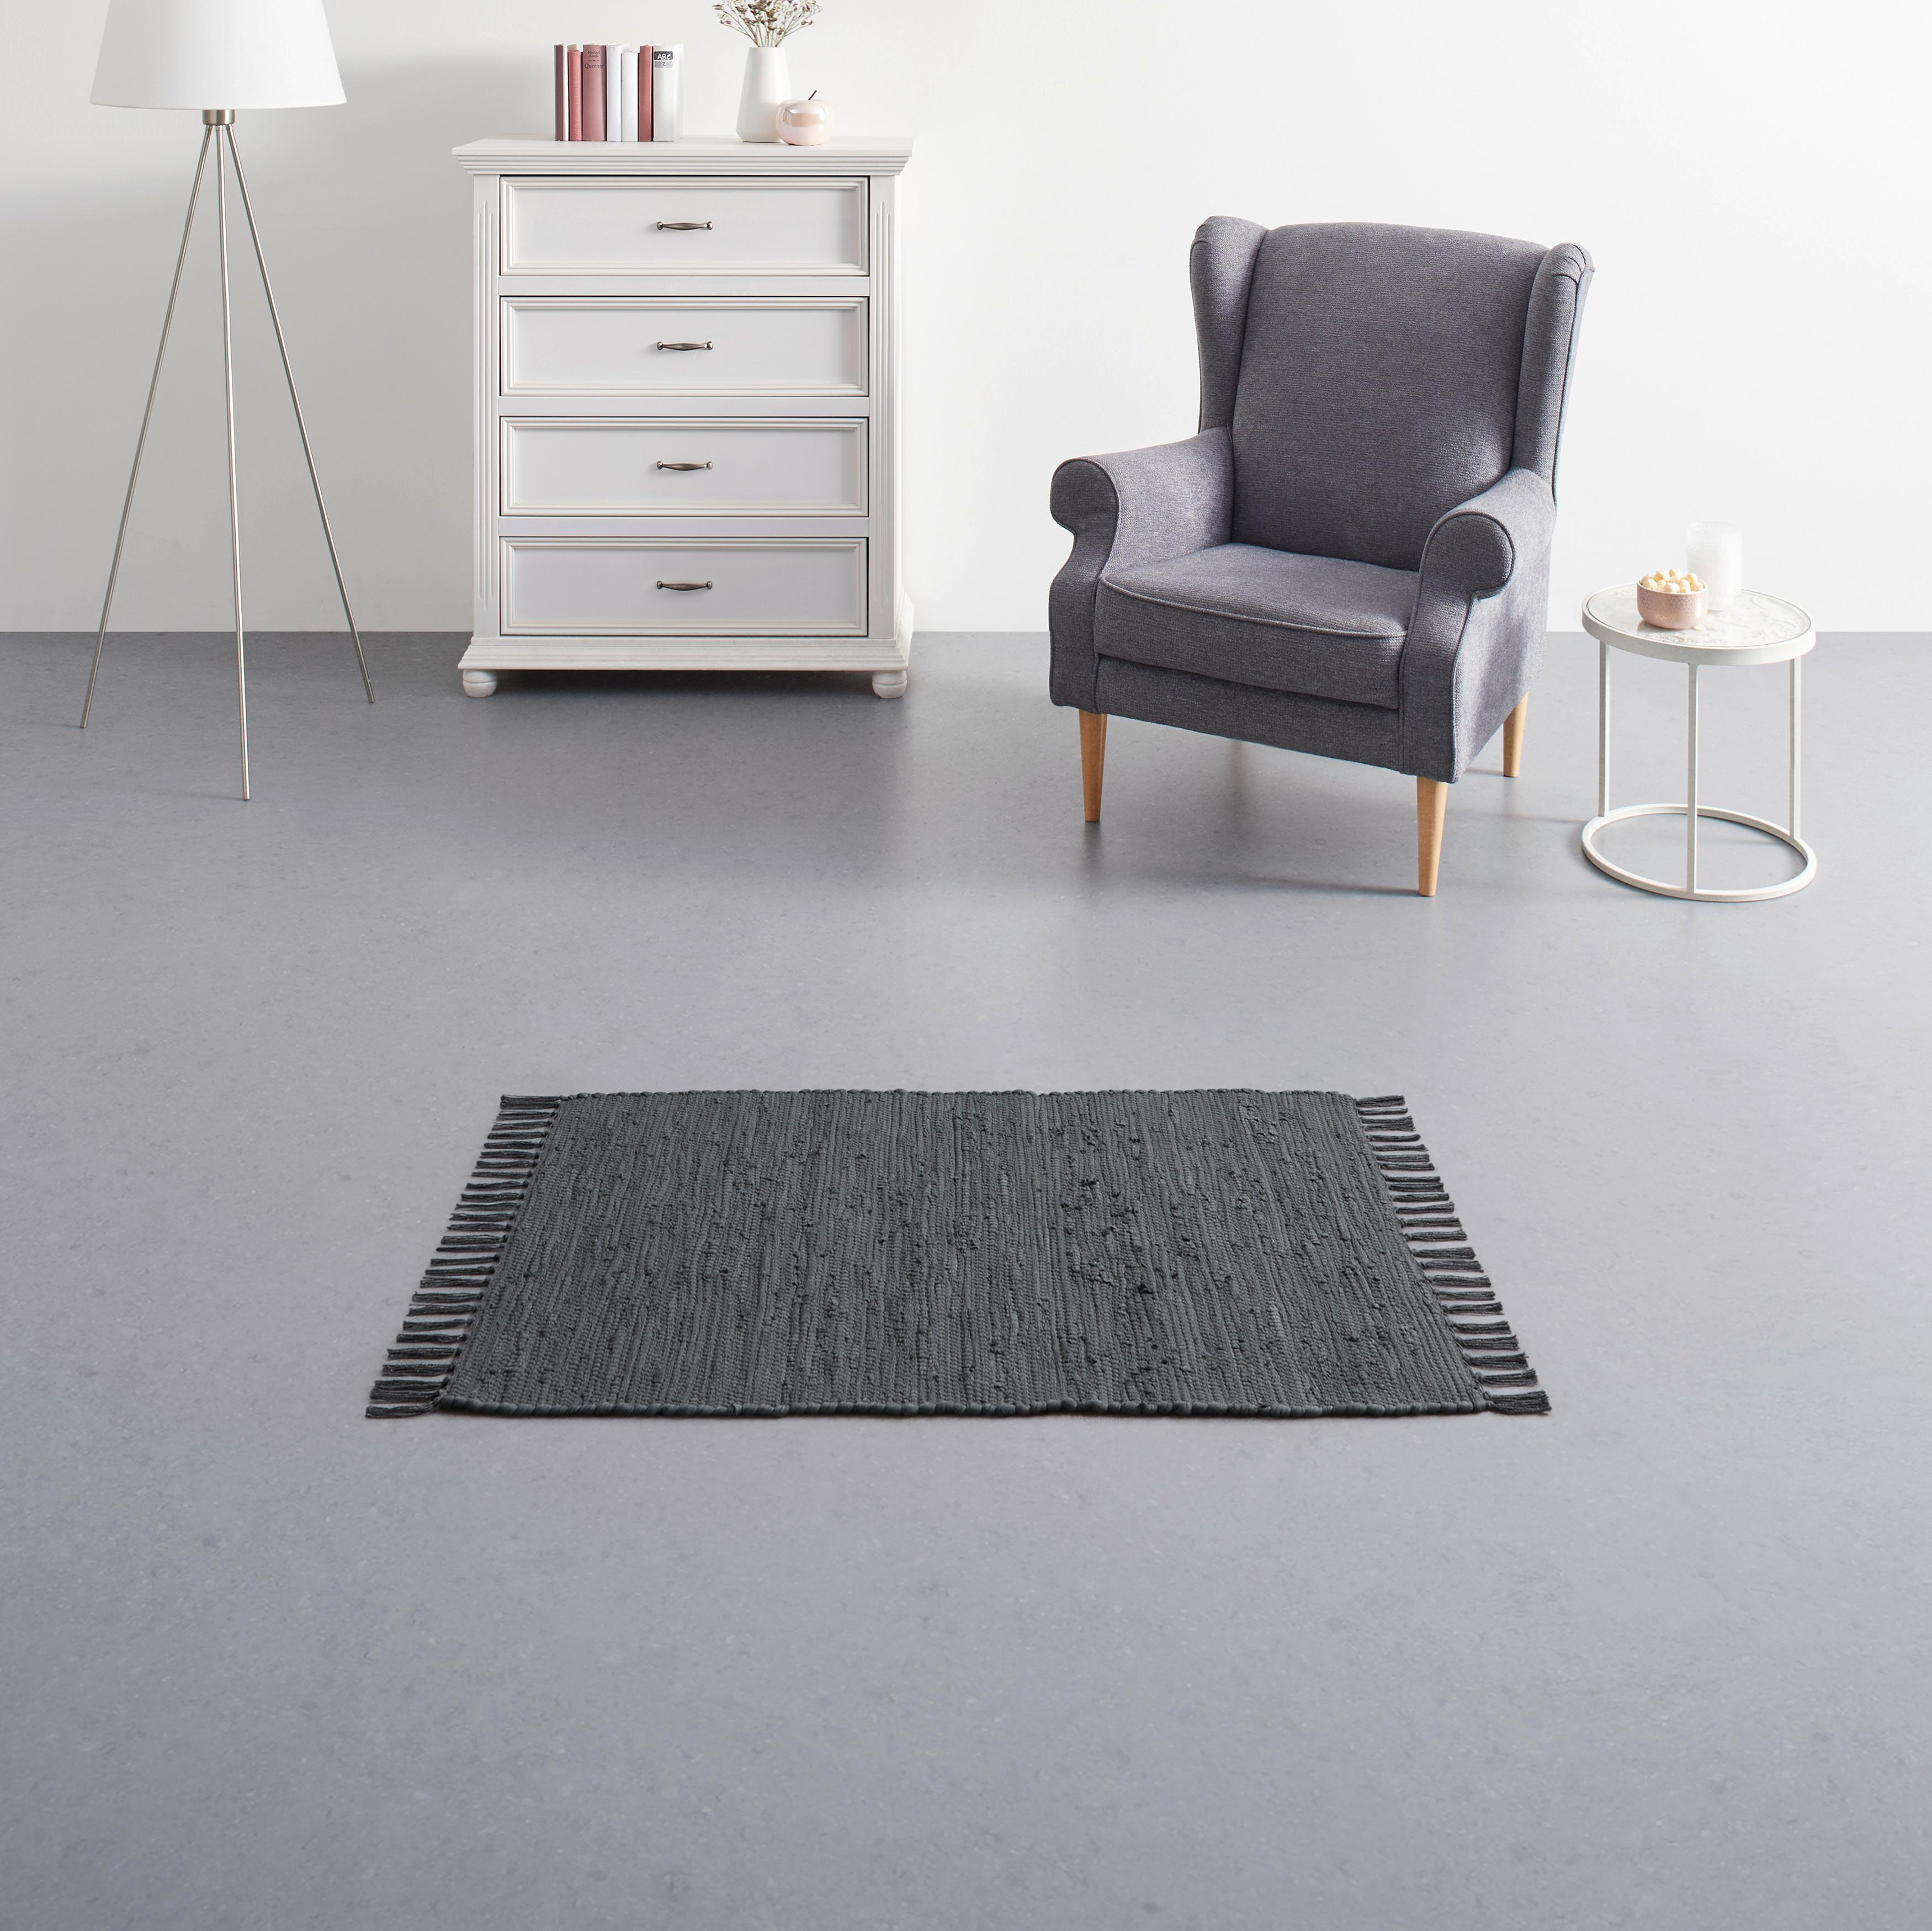 Tkaný handričkový koberec JULIA 1, š/d: 60/90cm - tmavosivá, Romantický / Vidiecky, textil (60/90cm) - Modern Living